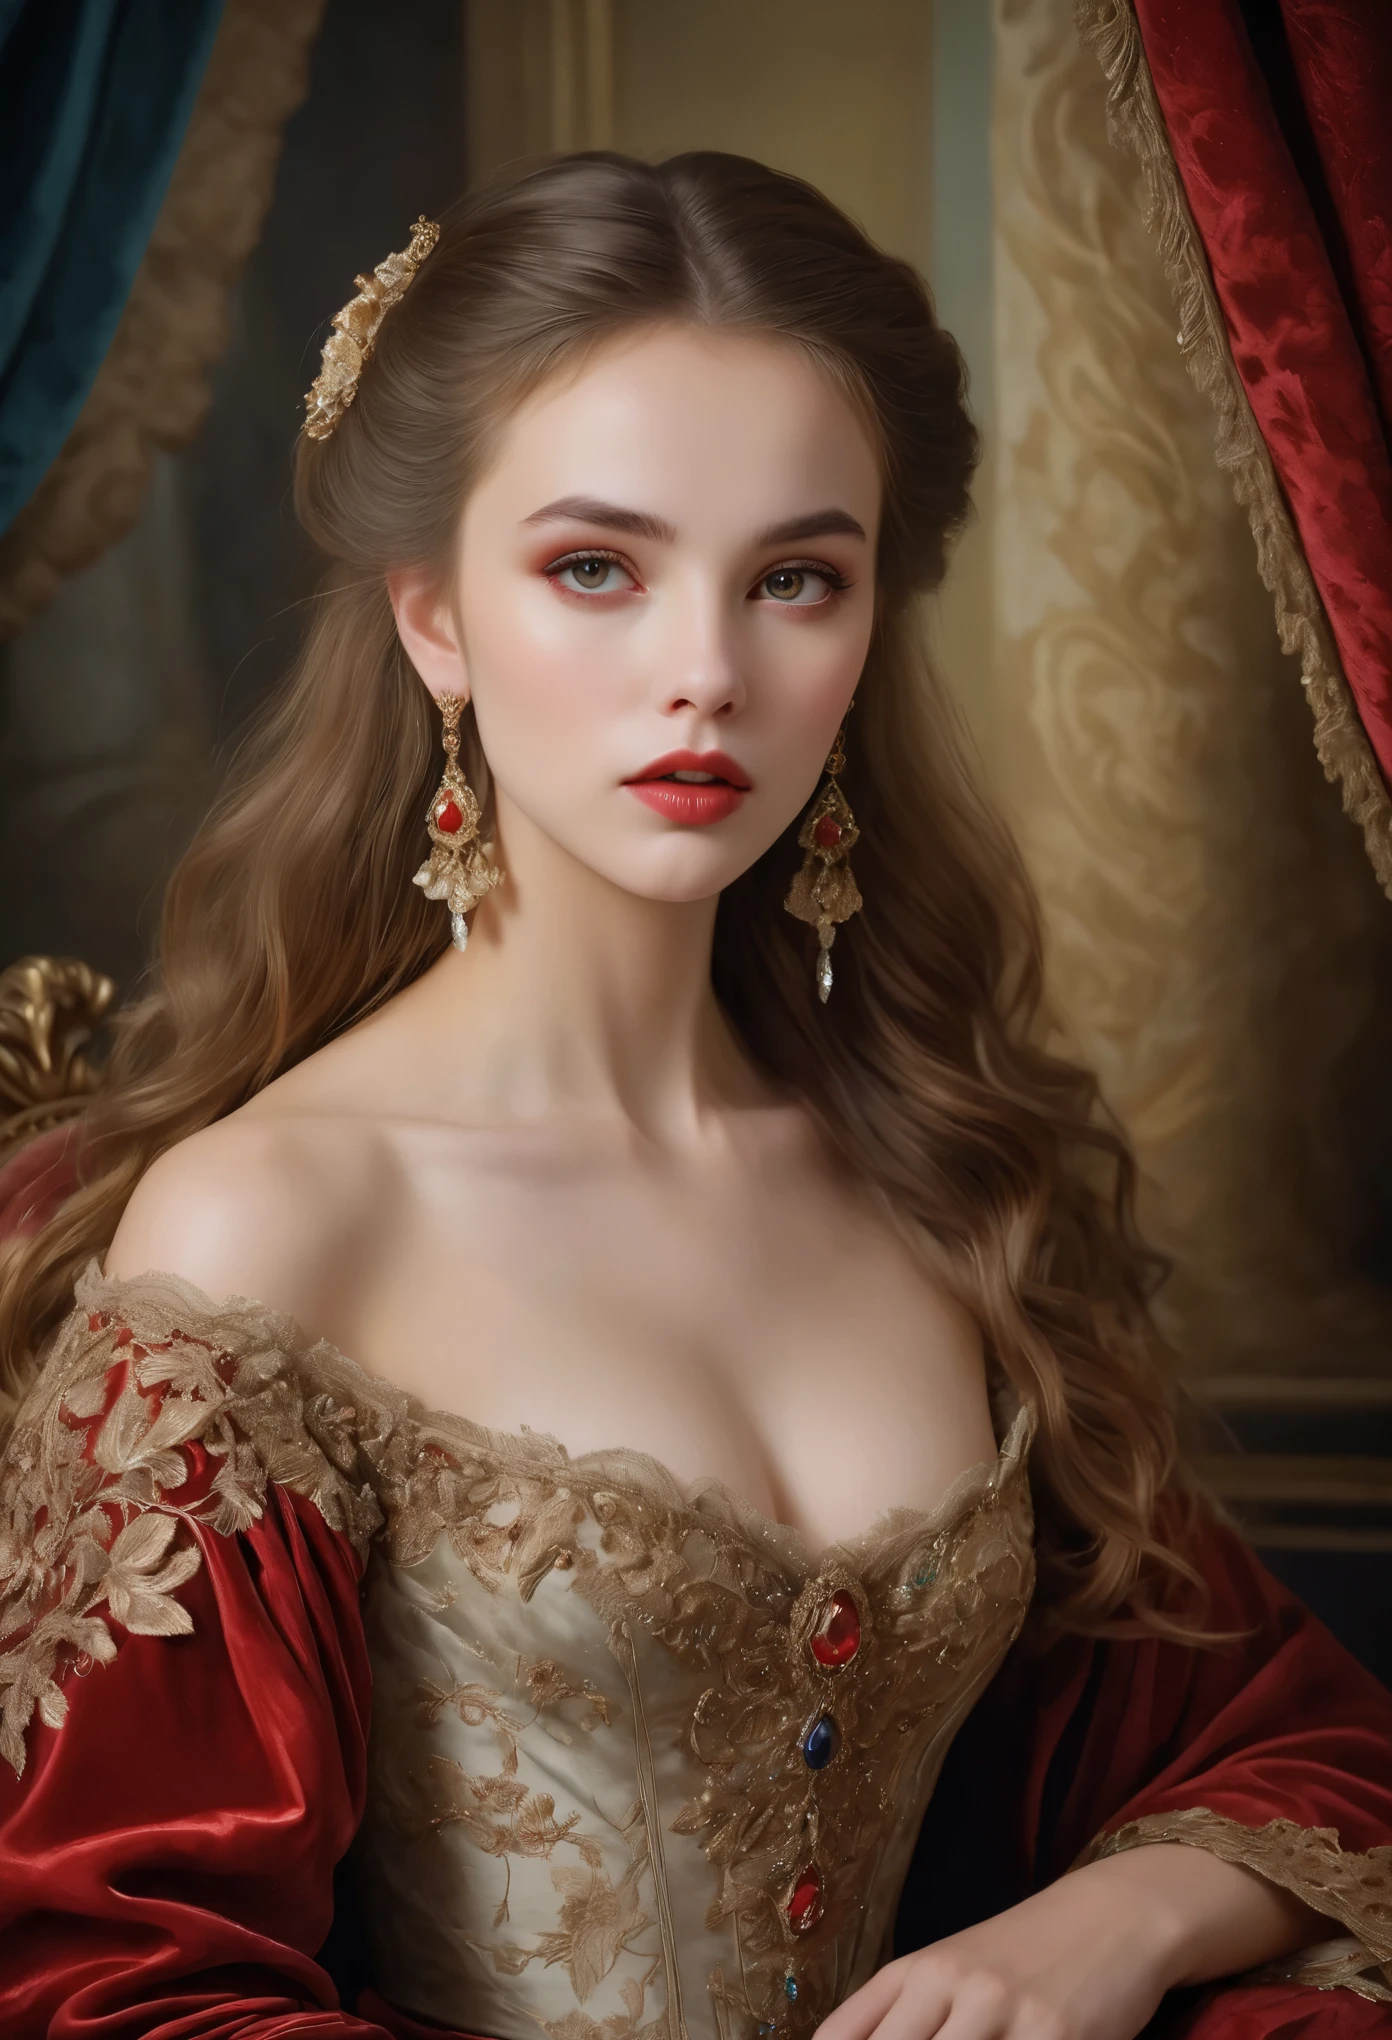 (haute résolution,chef-d&#39;œuvre:1.2),(Réaliste:1.37)Un portrait d&#39;une jeune fille vampire russe du XVIIIe siècle d&#39;une beauté sans précédent. Elle a des yeux rouges fascinants et de délicates lèvres roses.. longs crocs, Le portrait est minutieusement détaillé, capturant chaque nuance subtile de ses traits. Elle est ornée d&#39;une robe en soie exquise, orné de dentelle complexe et de broderies délicates. Le tableau met en valeur l’opulence de l’époque, avec des rideaux de velours luxuriants et des meubles dorés en arrière-plan. L&#39;éclairage est doux et diffus, accentuant la beauté éthérée de la fille. Les couleurs sont vibrantes et riches, créer une expérience visuelle captivante. Le portrait est créé dans le style du portrait classique, rappelant les œuvres d&#39;artistes renommés de l&#39;époque. Il respire l’élégance, la grâce, et sophistication.